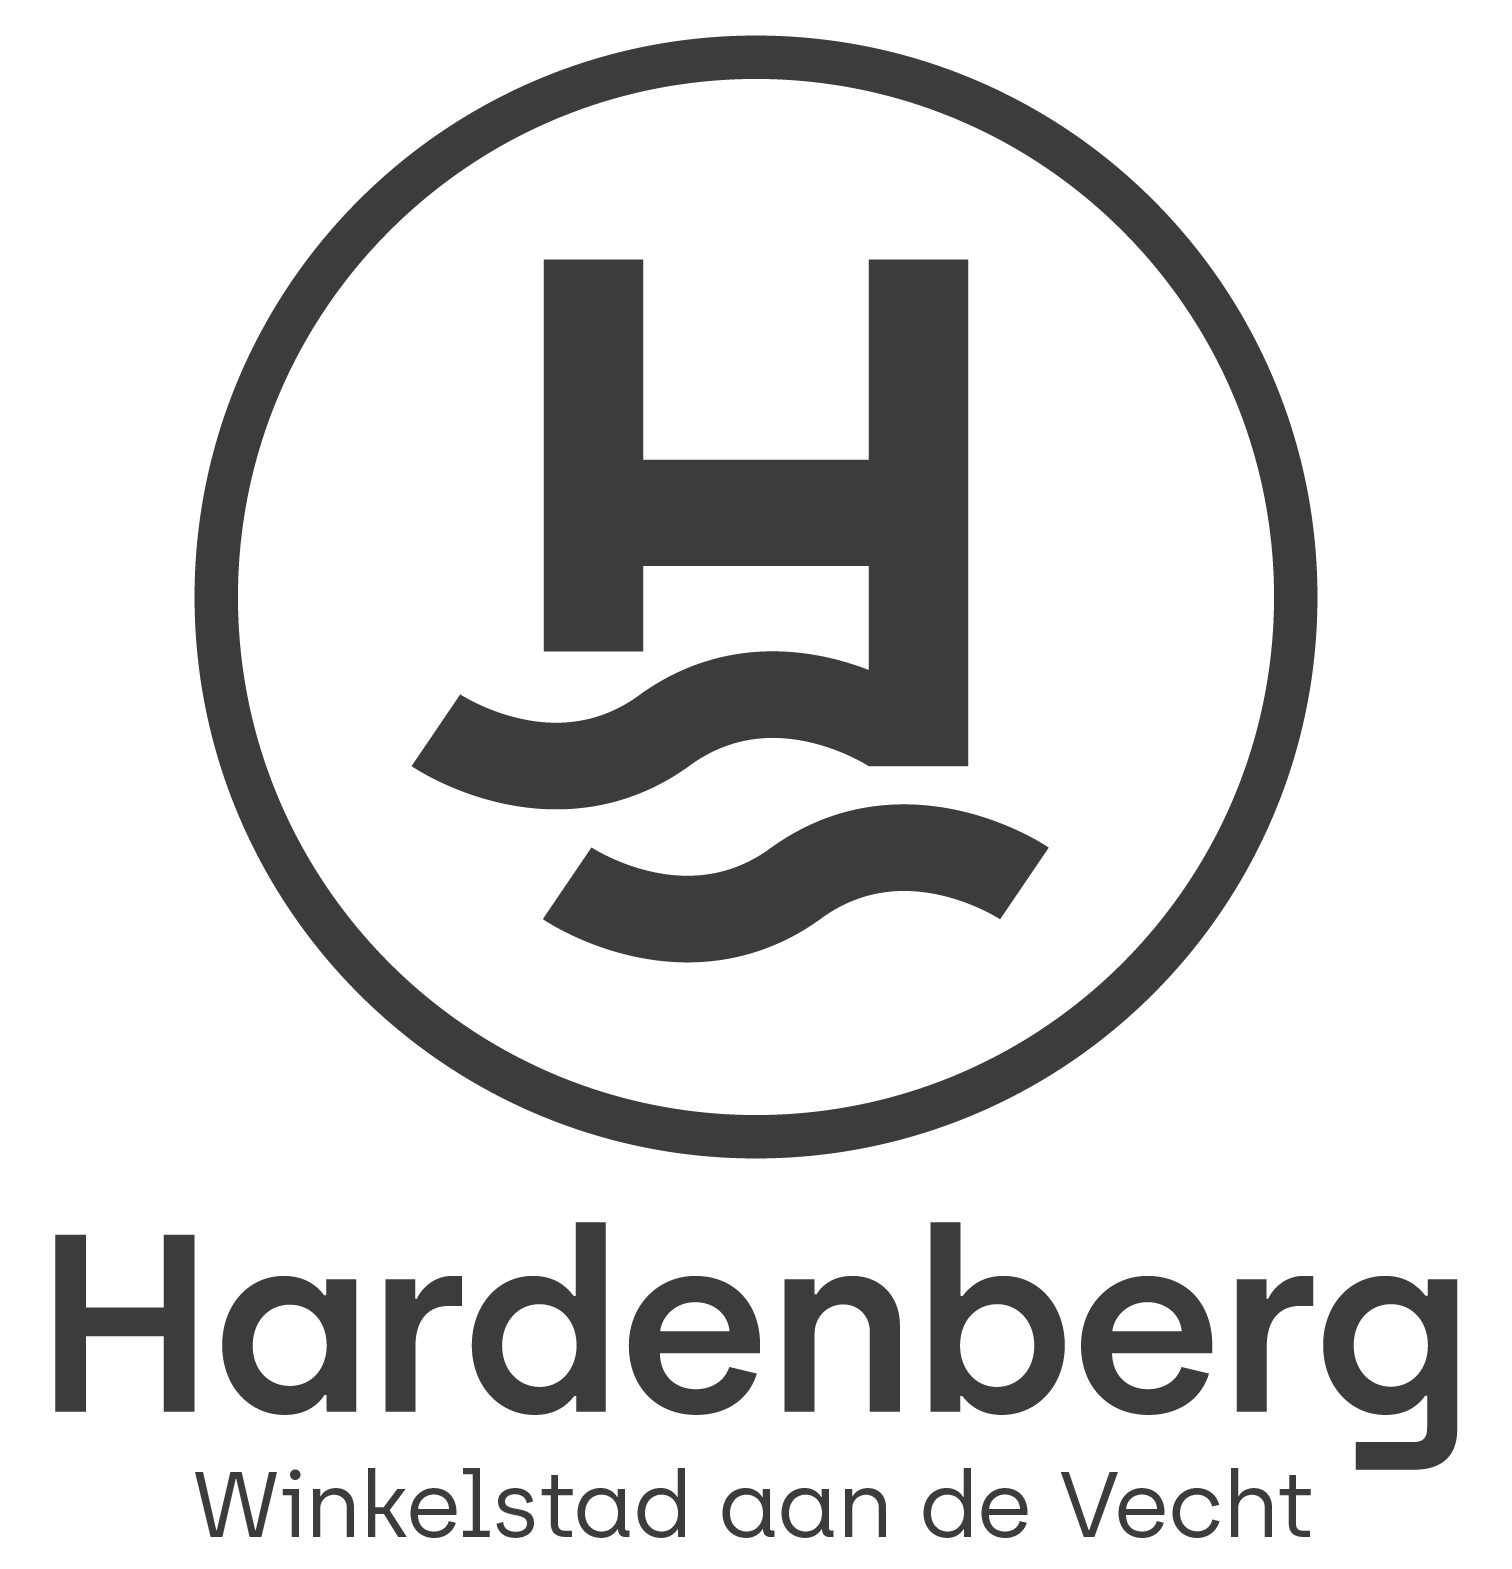 Klauterbaan & Straattheater - Winkelstad Hardenberg